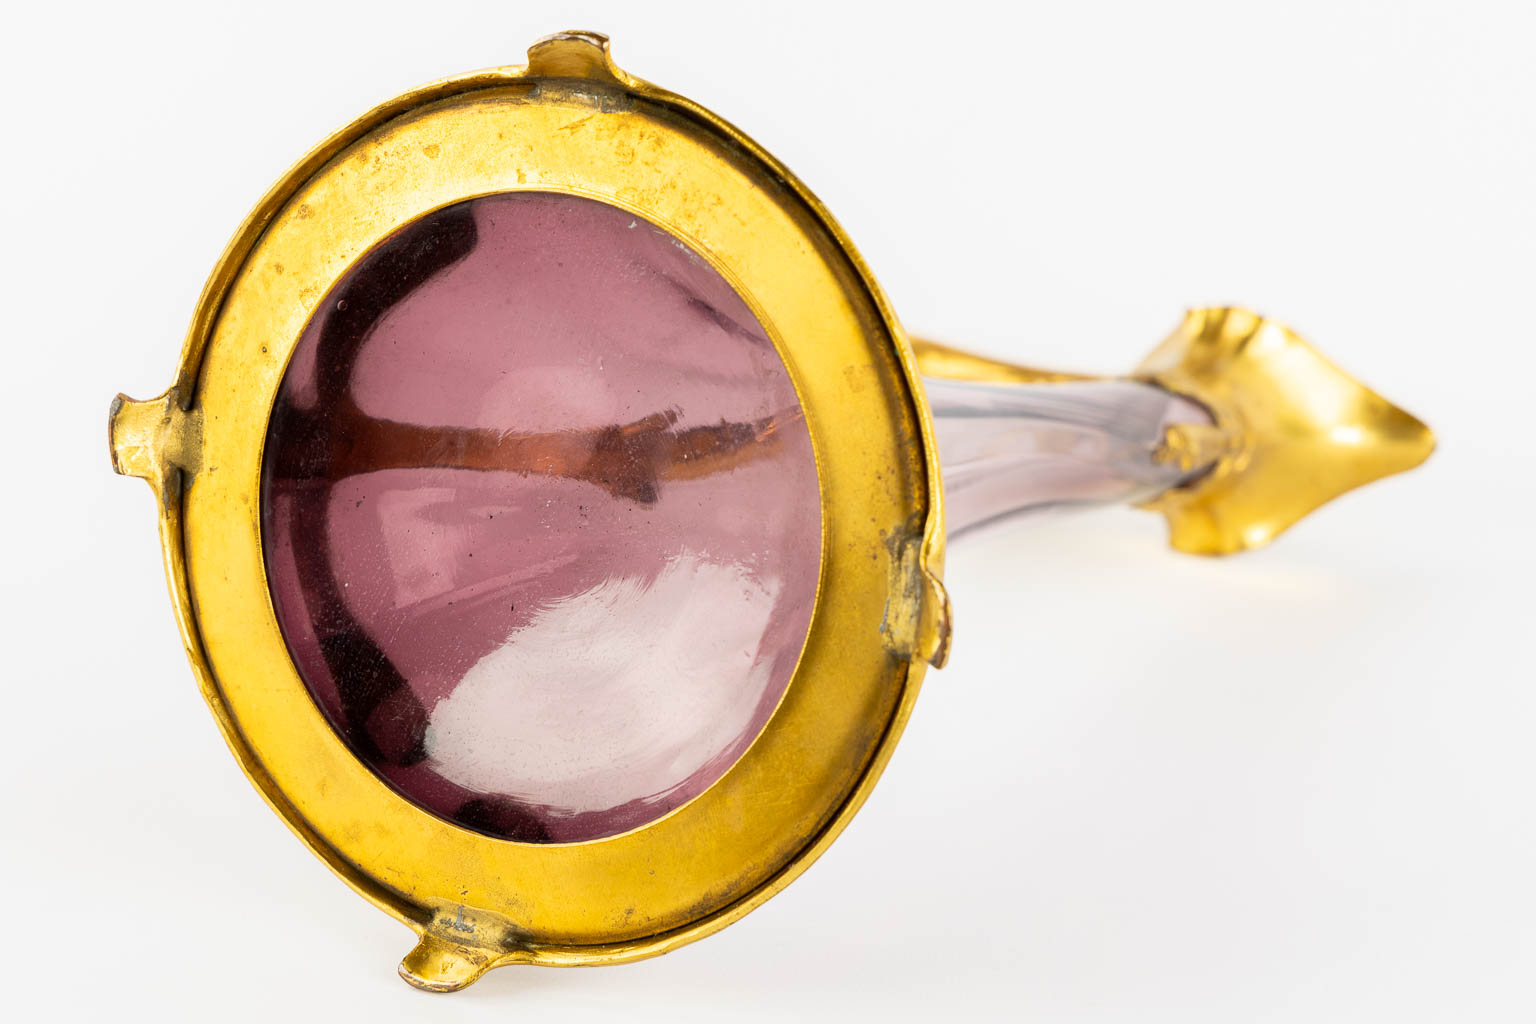 Een schenkkan, verguld metaal en glas, Art Nouveau. (L:16 x W:20 x H:39 cm)